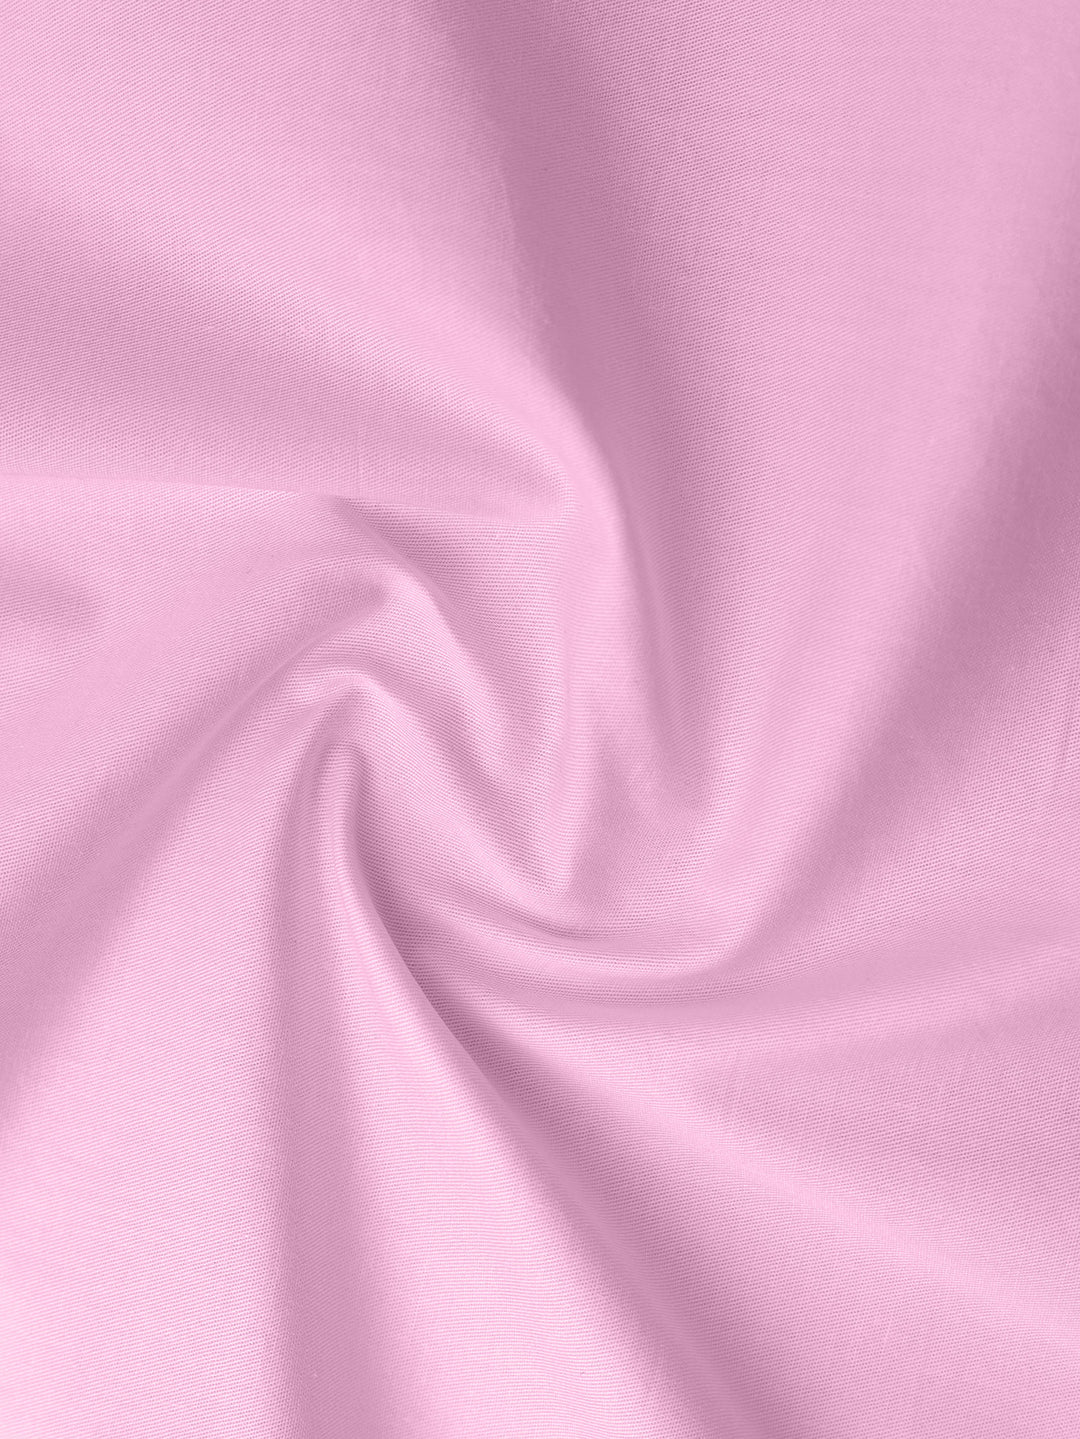 Blush Pink Cotton Shirt Fabric